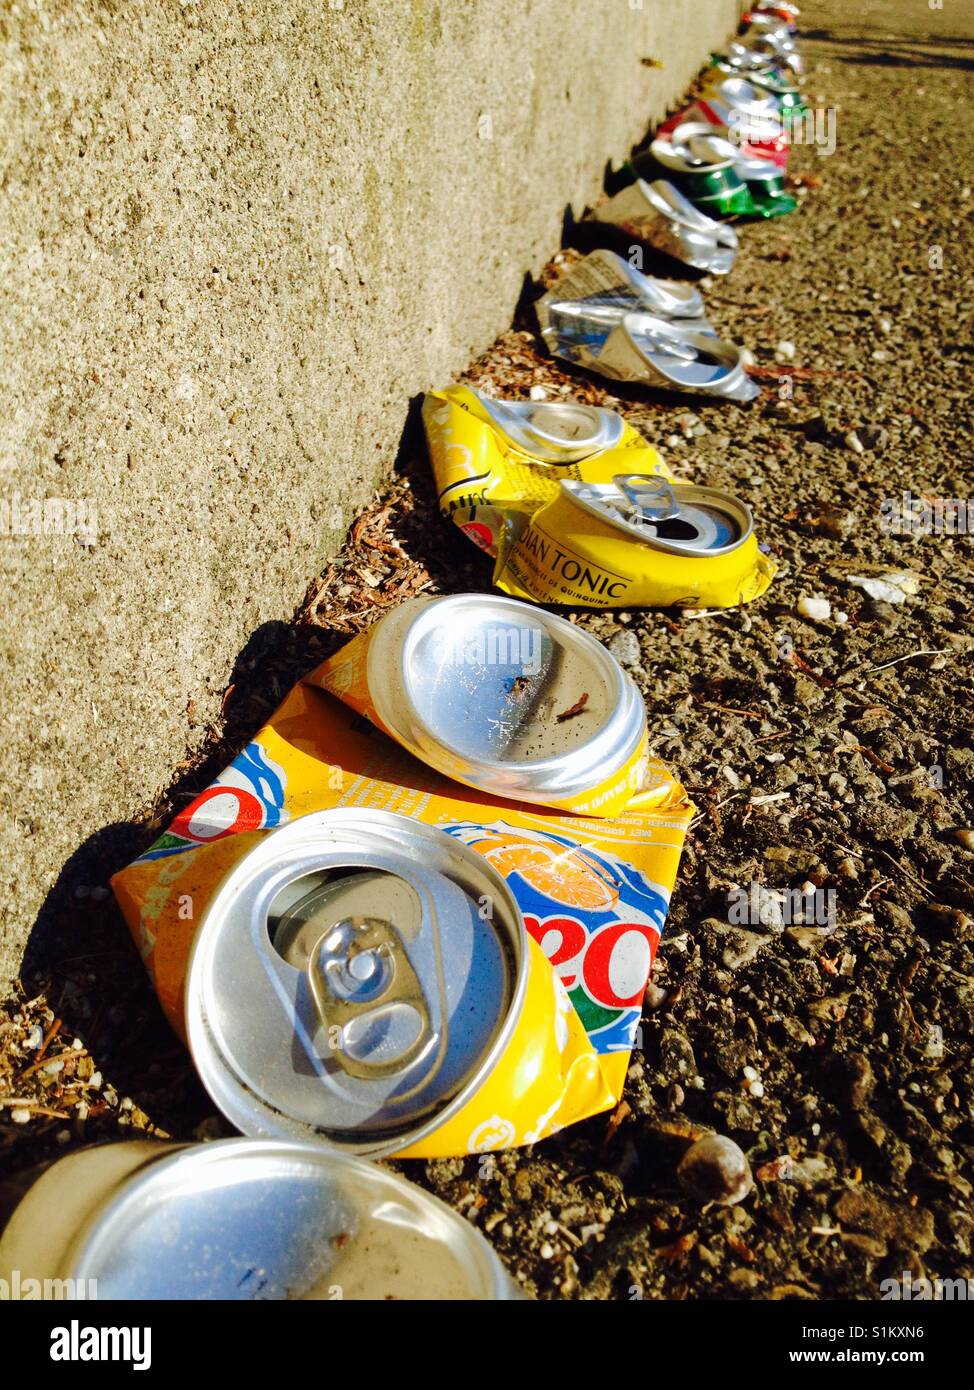 Molto ordinato per lettiera nella forma di una linea di bevande schiacciata / lattina di birra che dovrebbe andare per il riciclaggio. Foto Stock